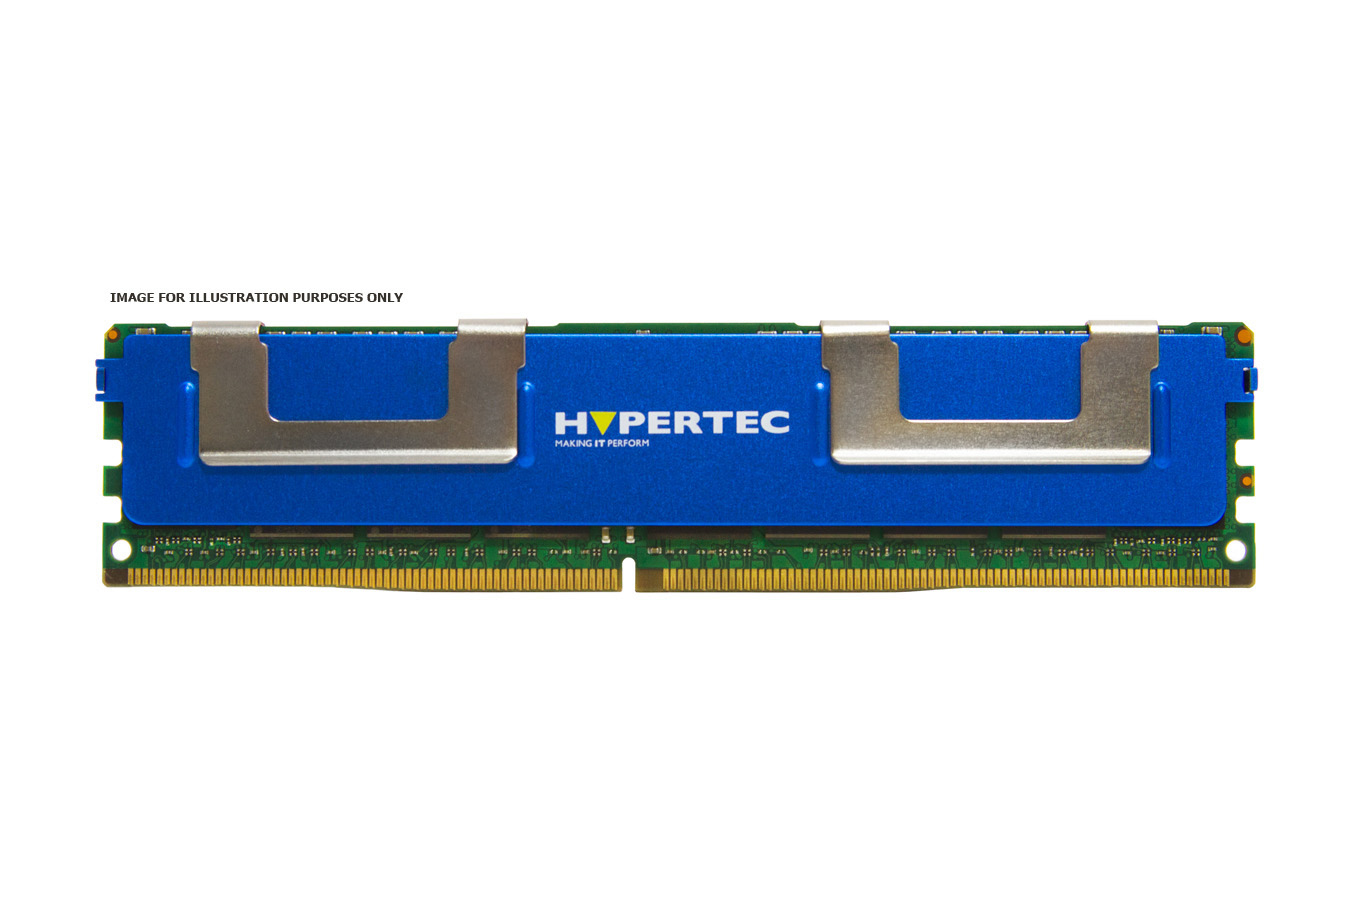 Hypertec SNPGRFJCC/16GWS-HY (Legacy) memory module 16 GB DDR3 ECC